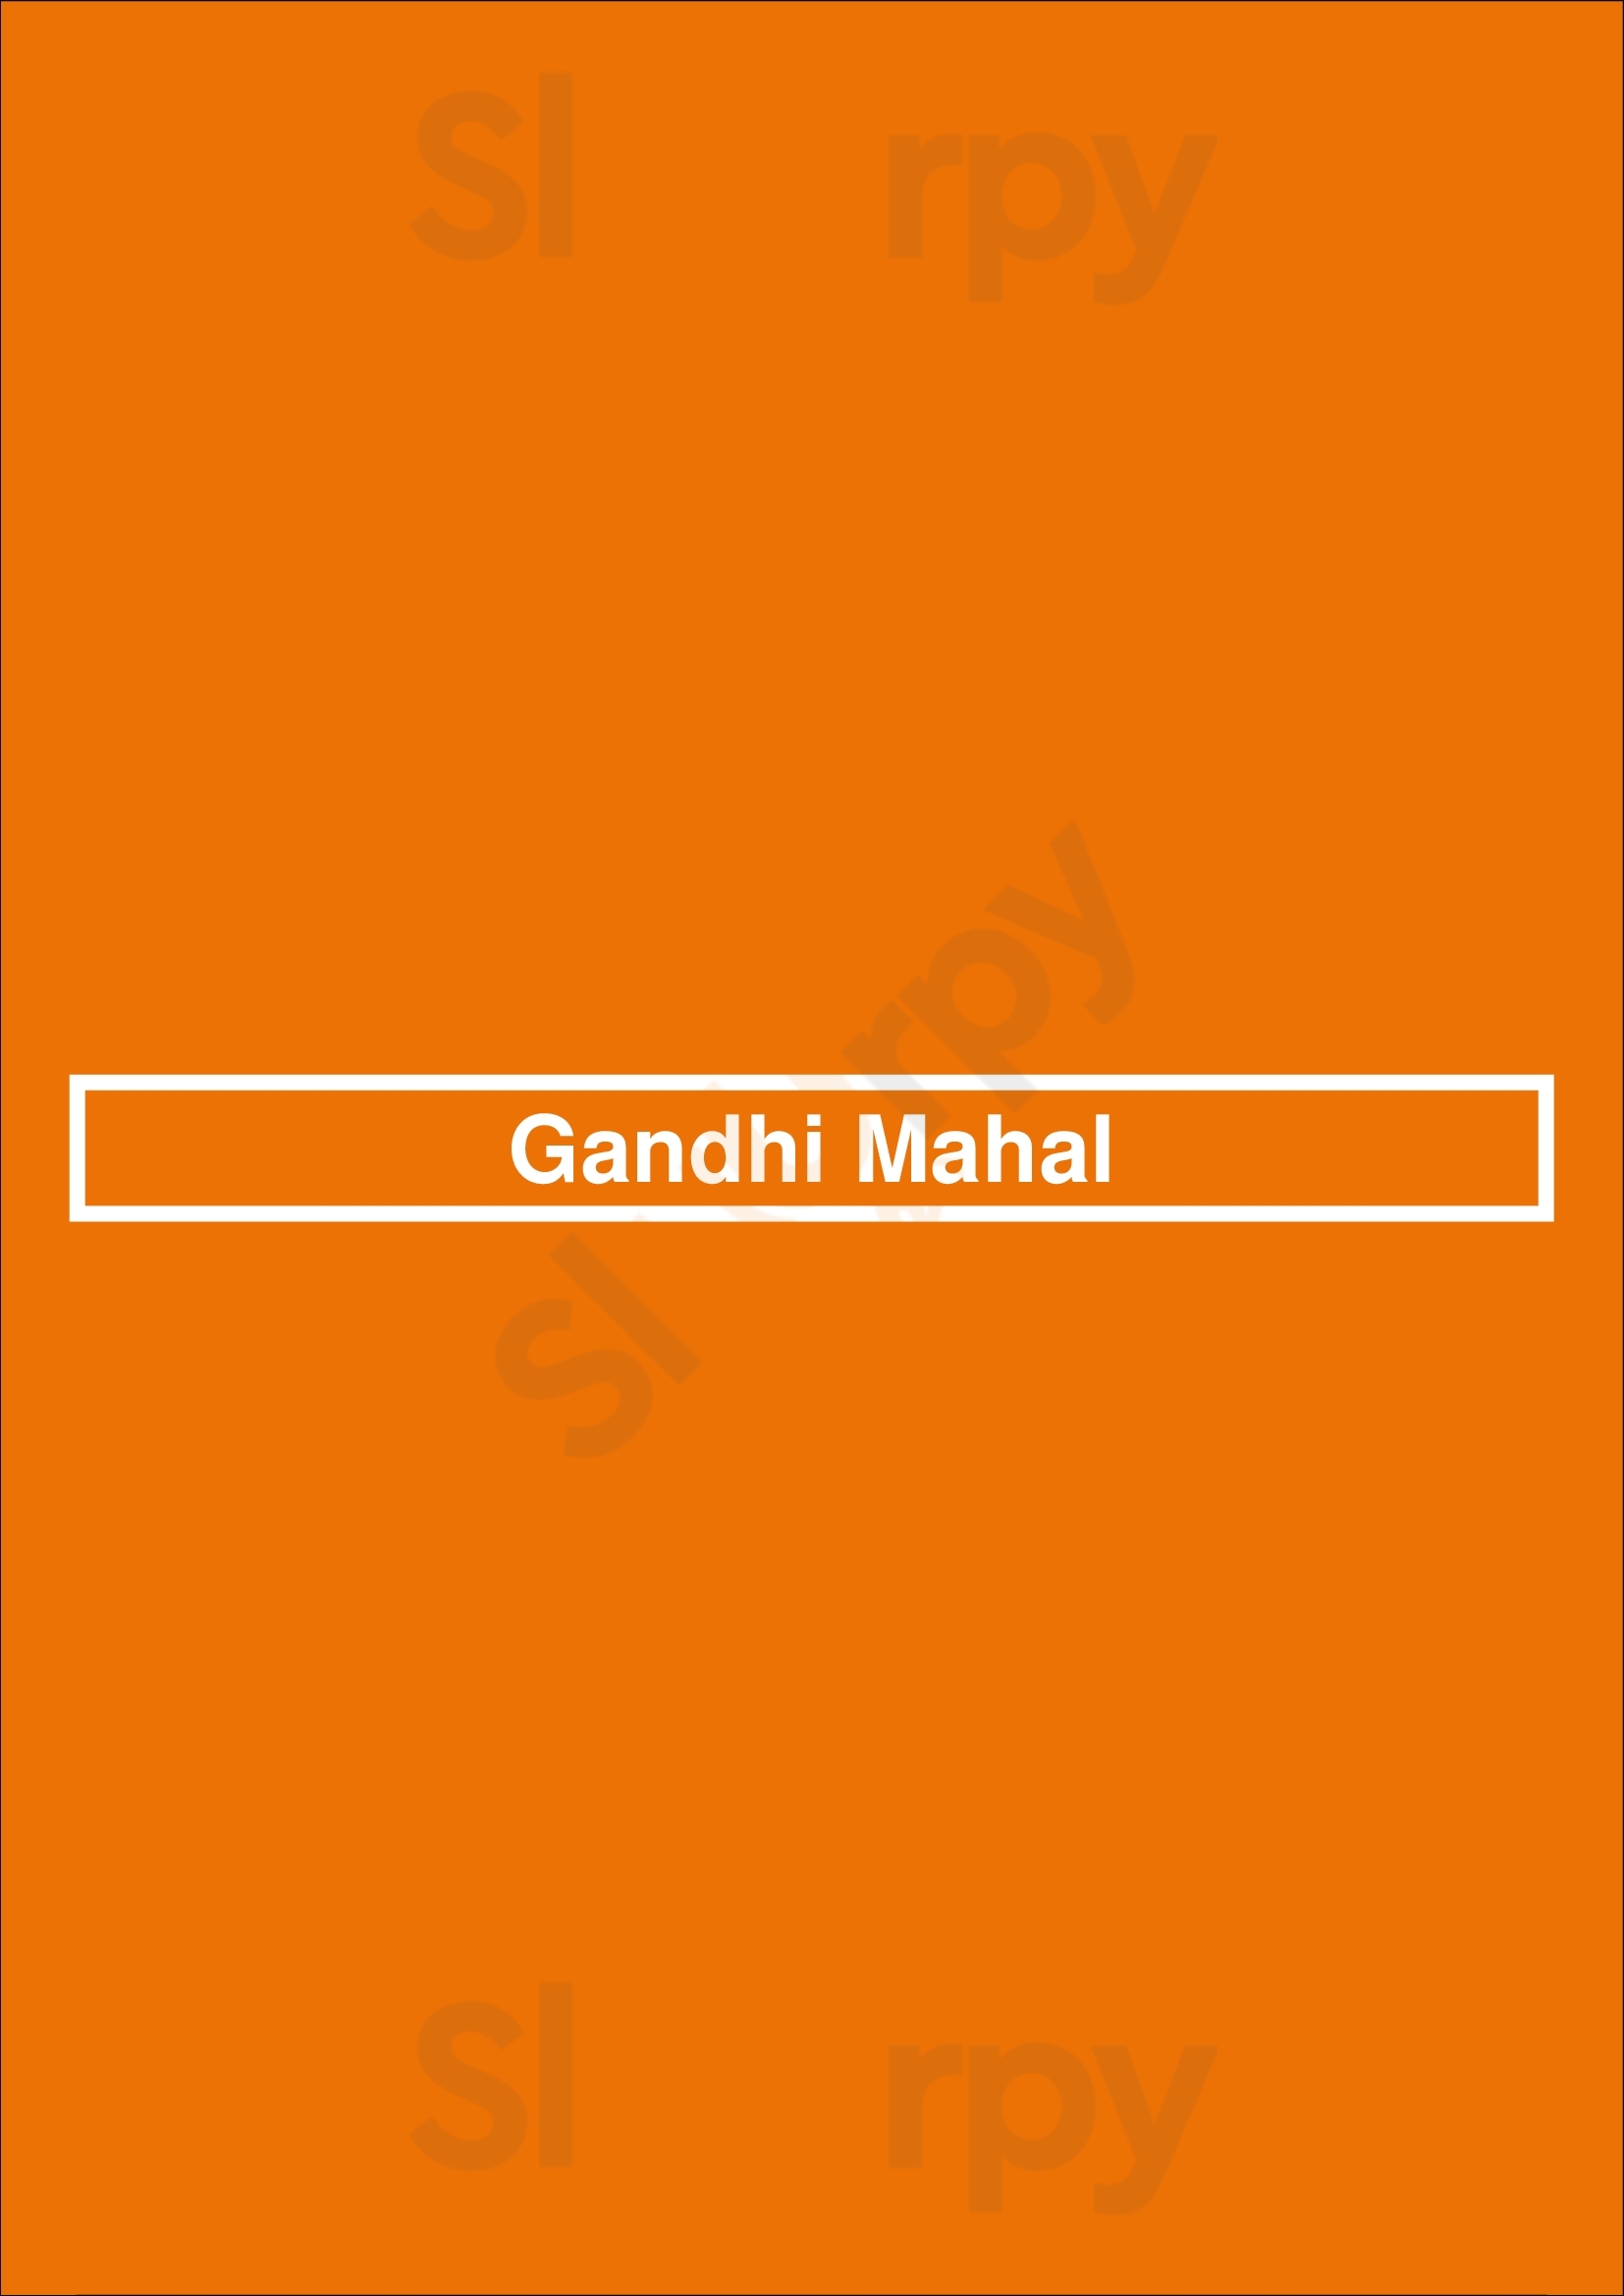 Gandhi Mahal Minneapolis Menu - 1